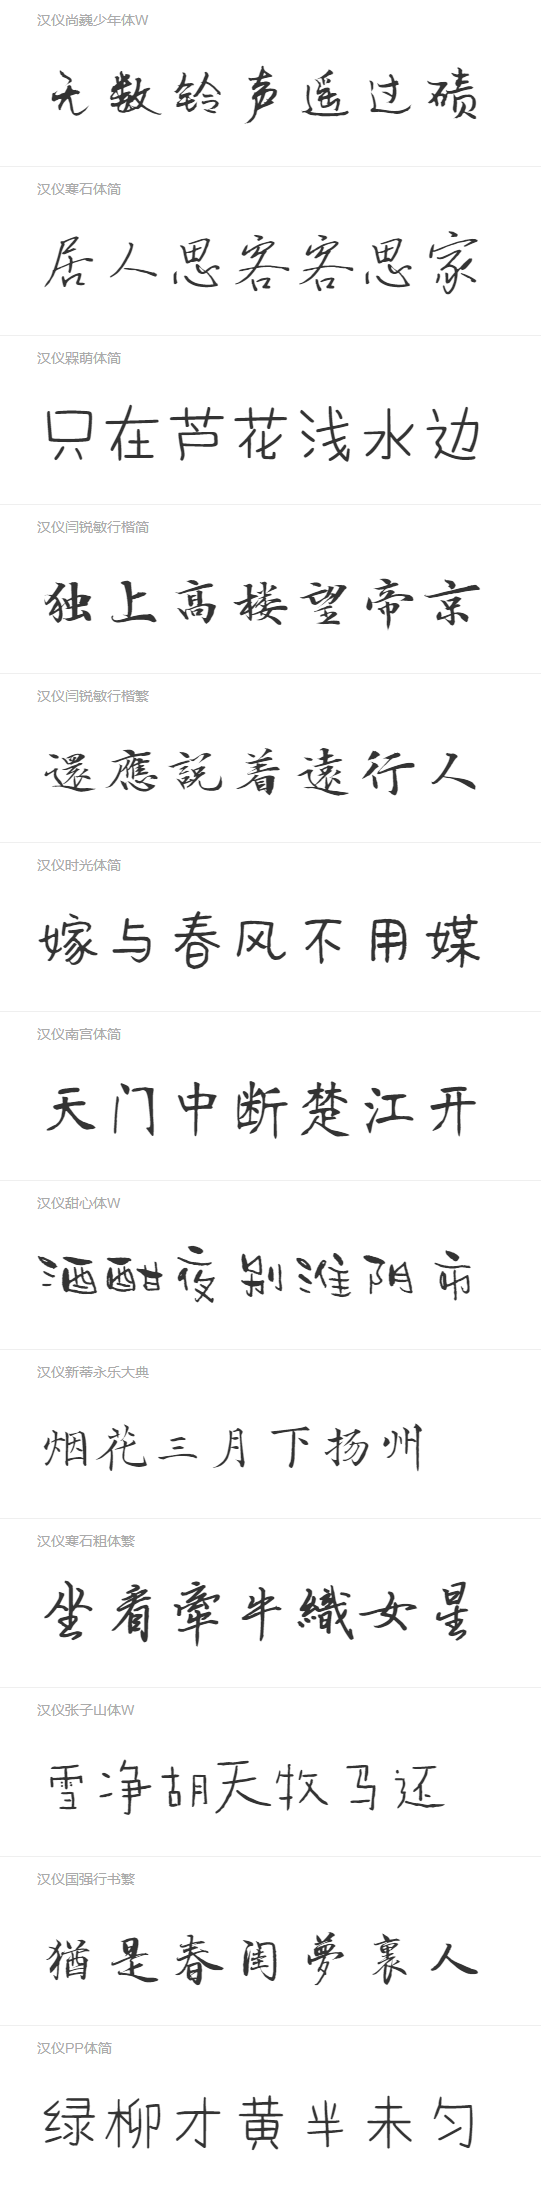 73款手写风格的中文字体免费下载